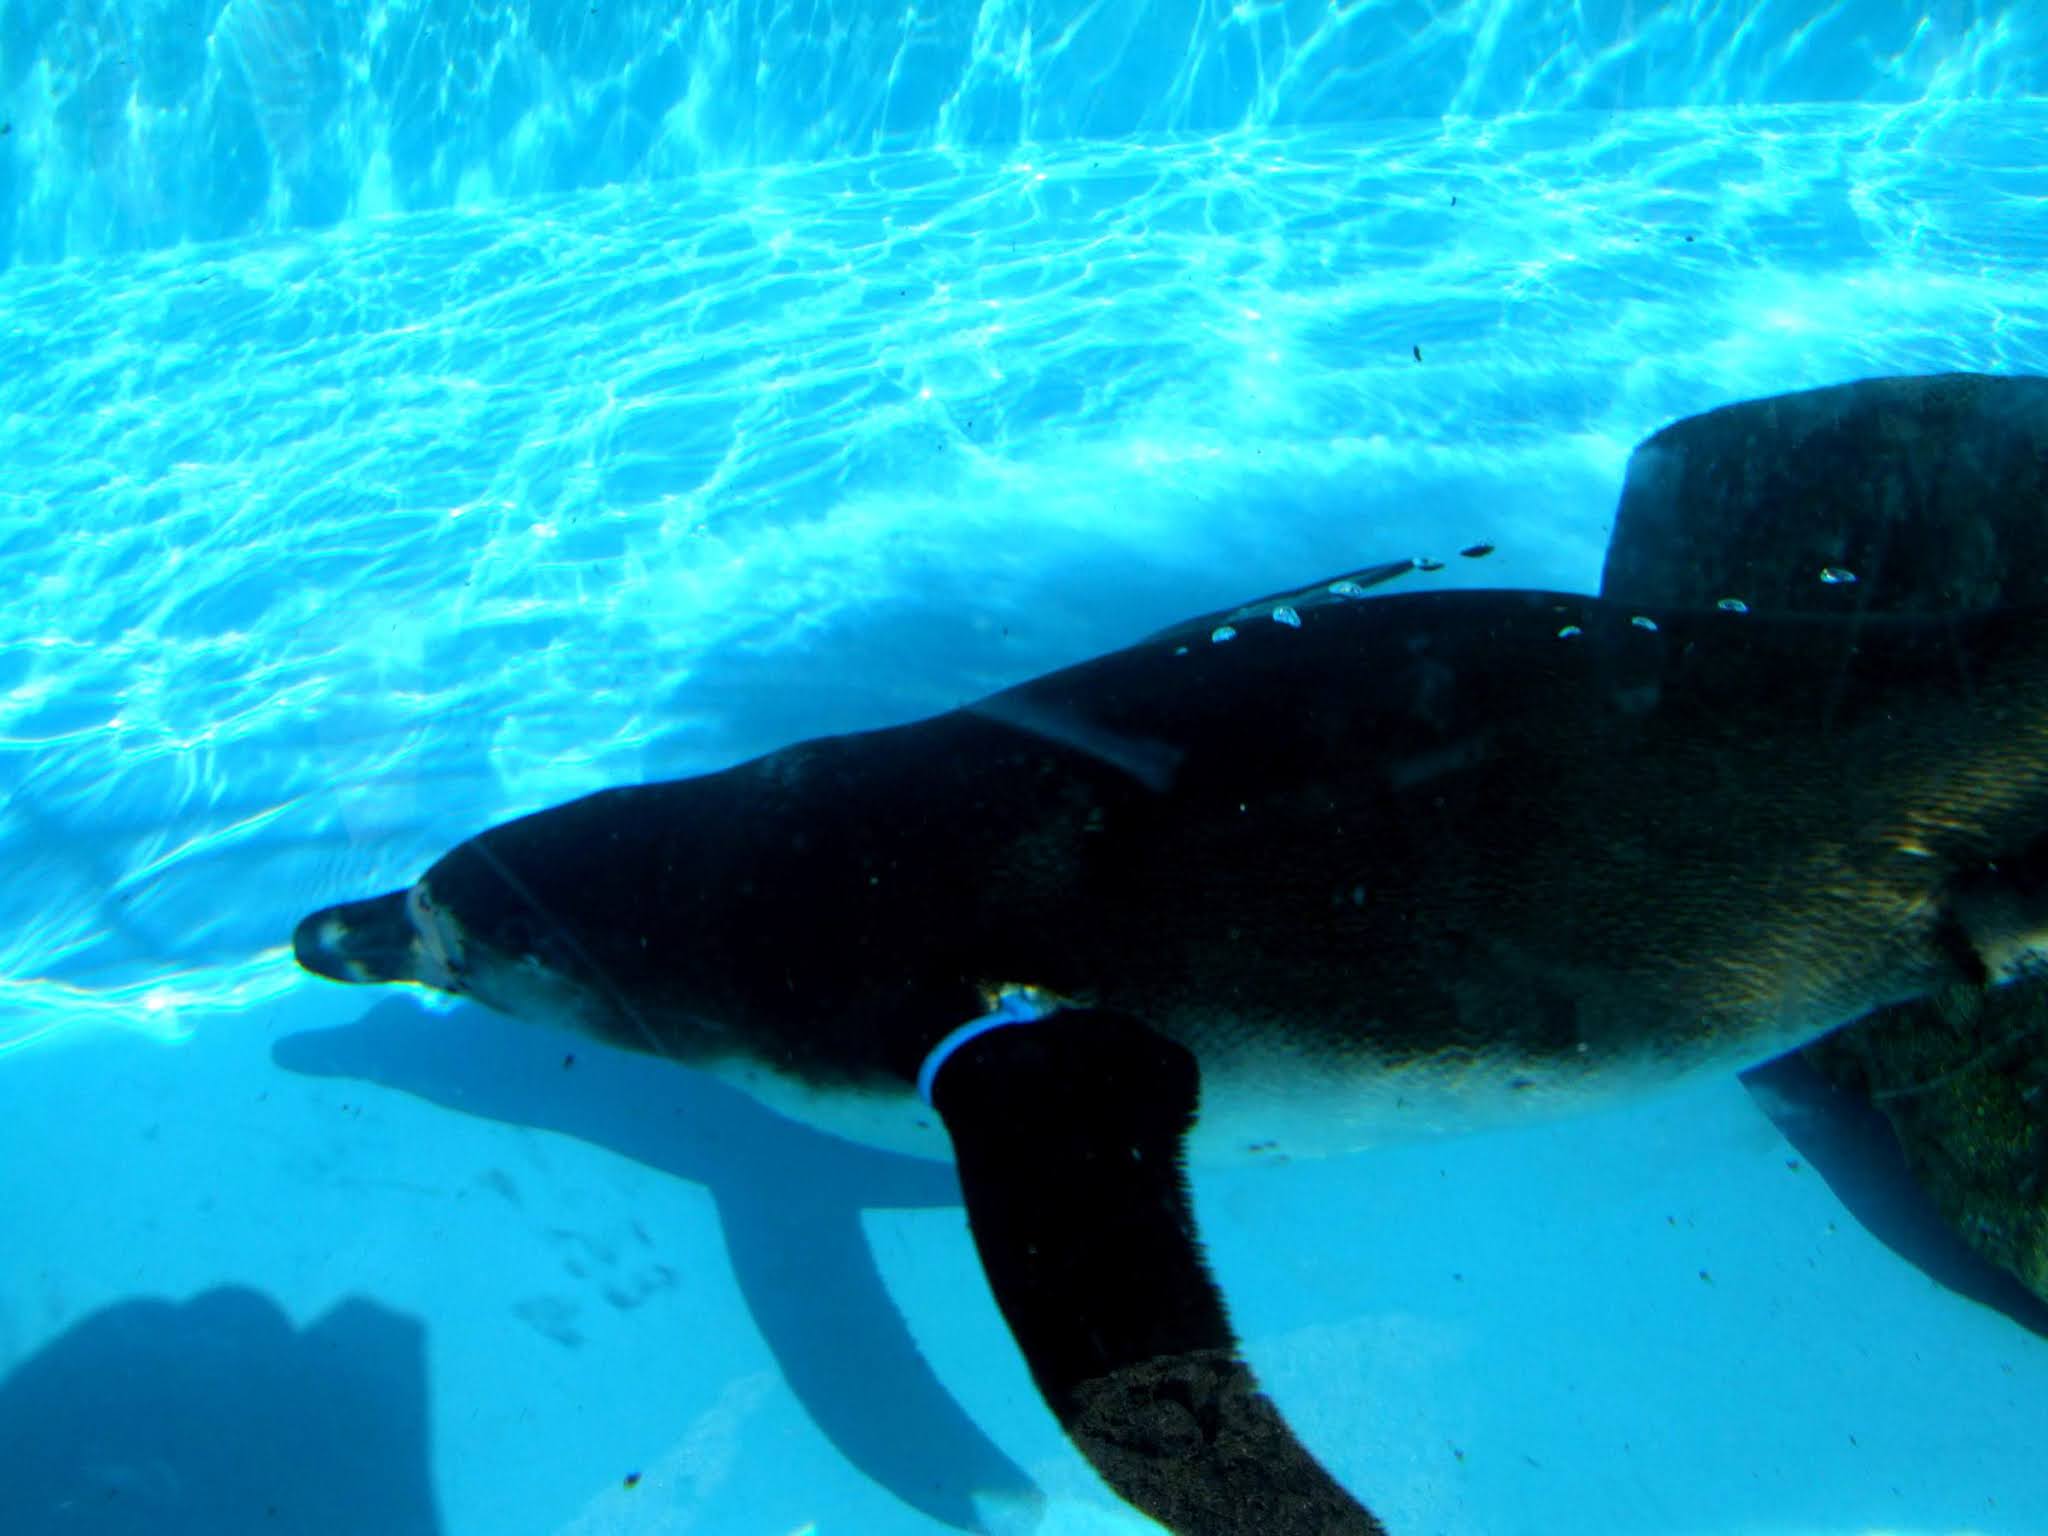 キレイなシアン色のプールの中を涼しげに泳いでいる可愛いペンギンさんの写真素材です。夏向けにオススメです。